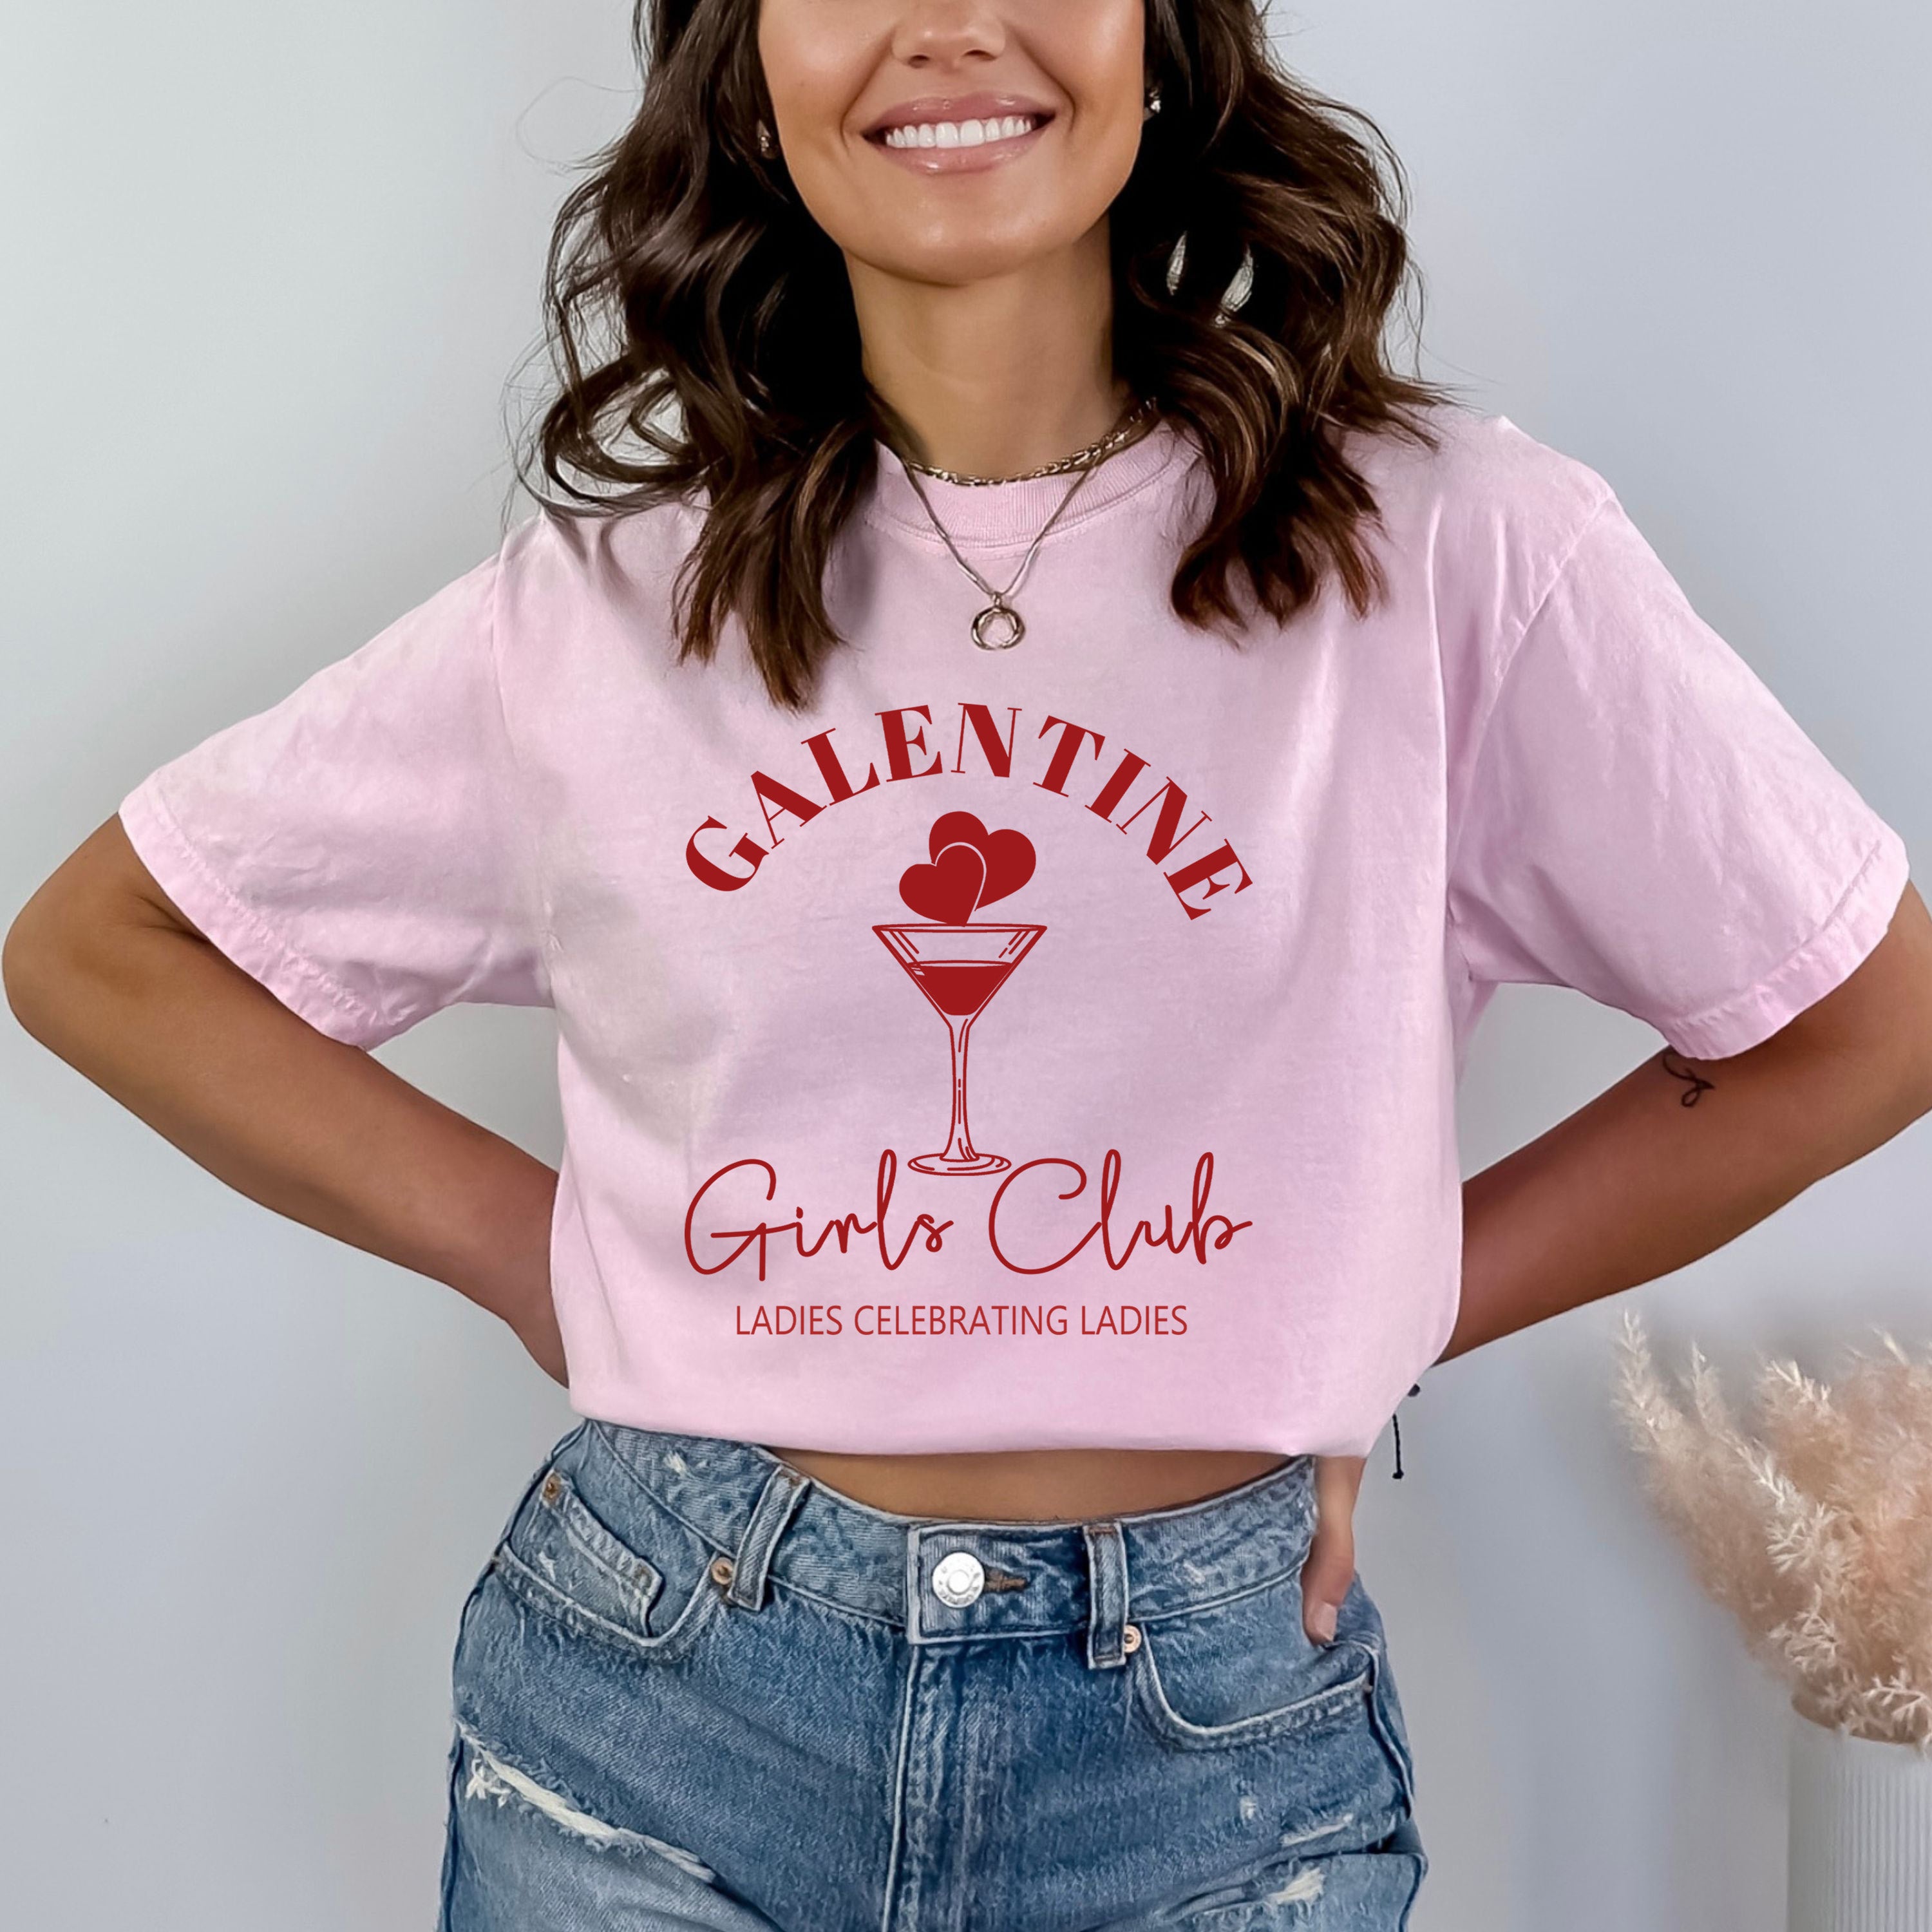 Galentine girls club - Bella canvas